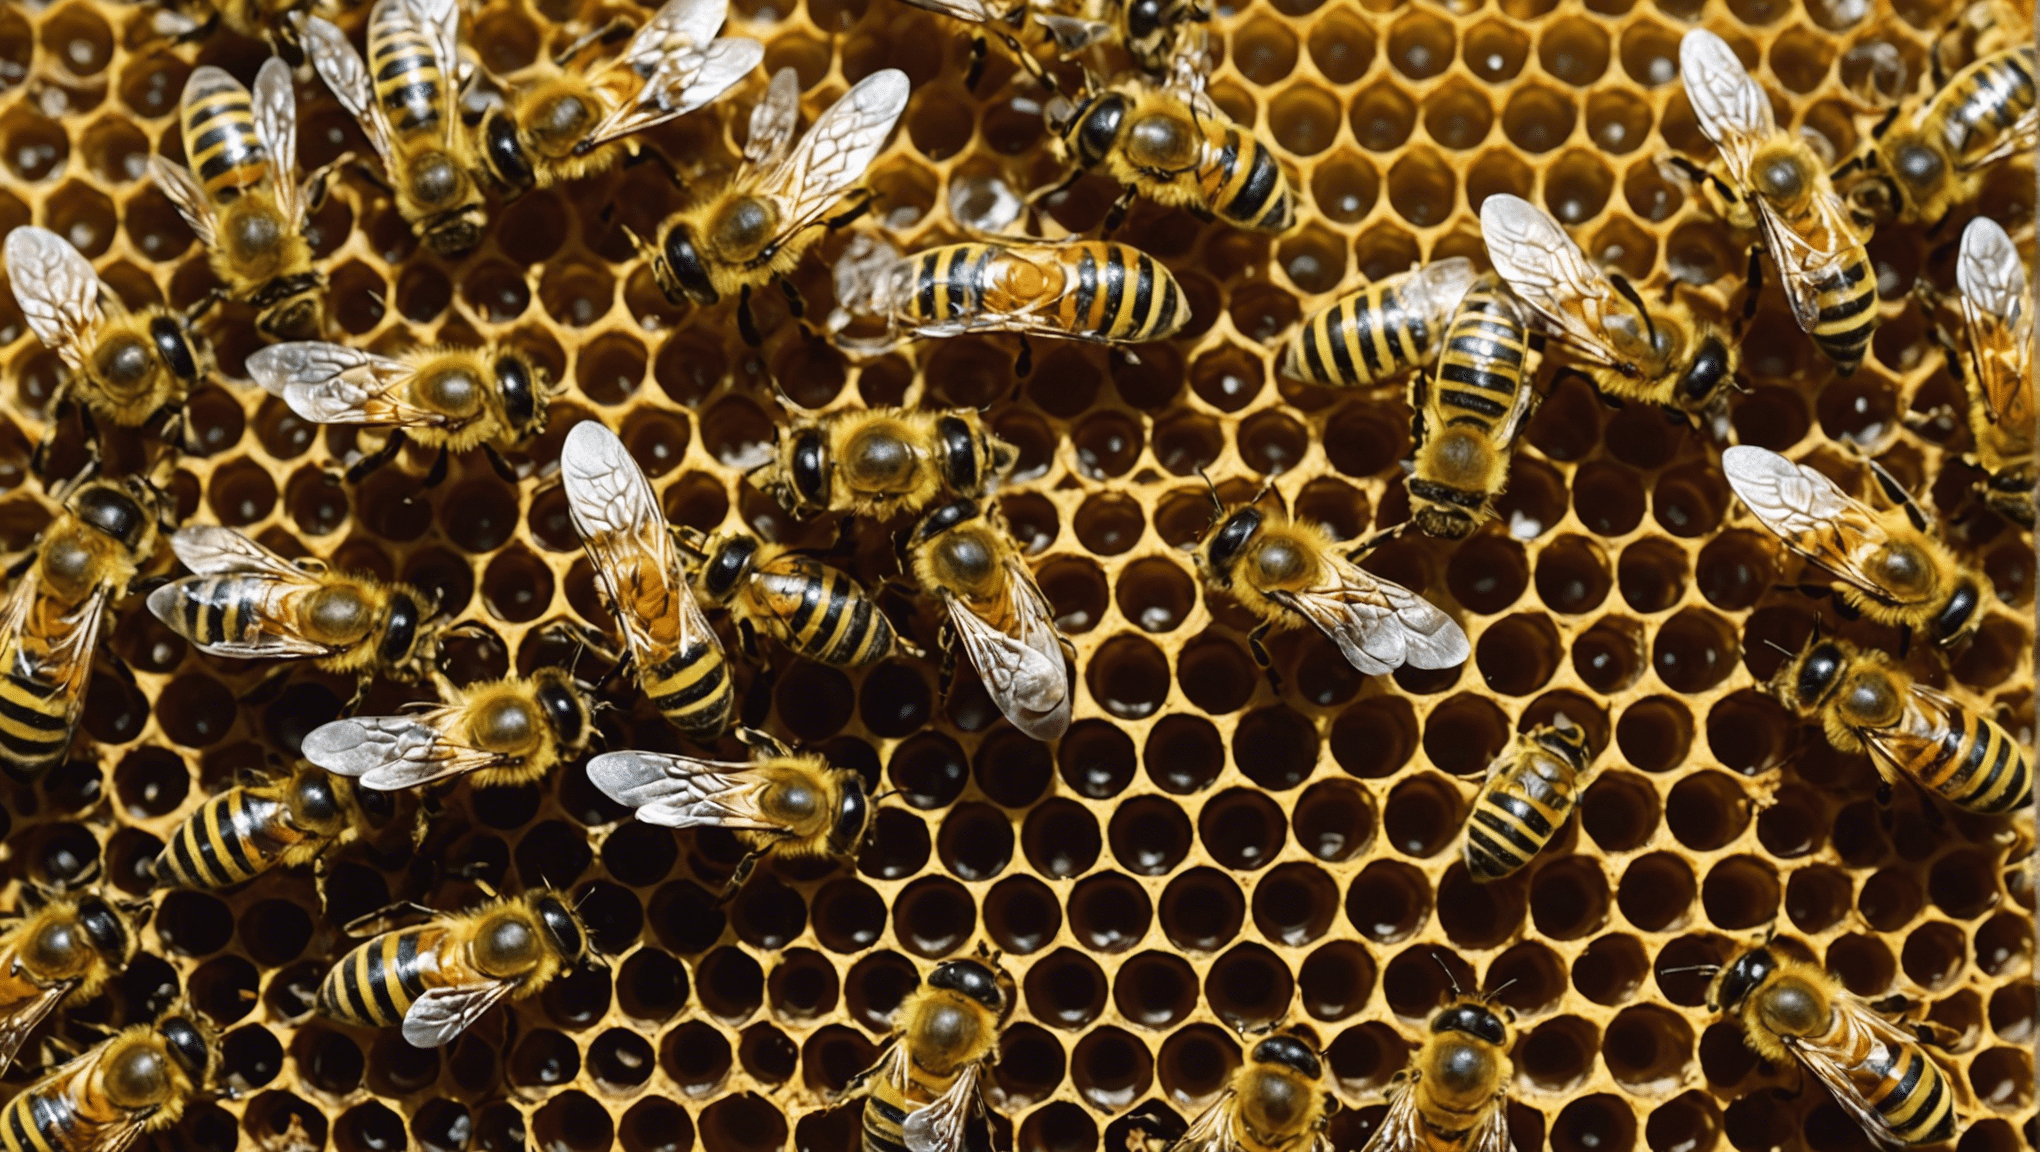 scopri i tesori nascosti delle api: il loro ruolo vitale nella natura, la produzione di miele e propoli e il loro impatto sull'ambiente.